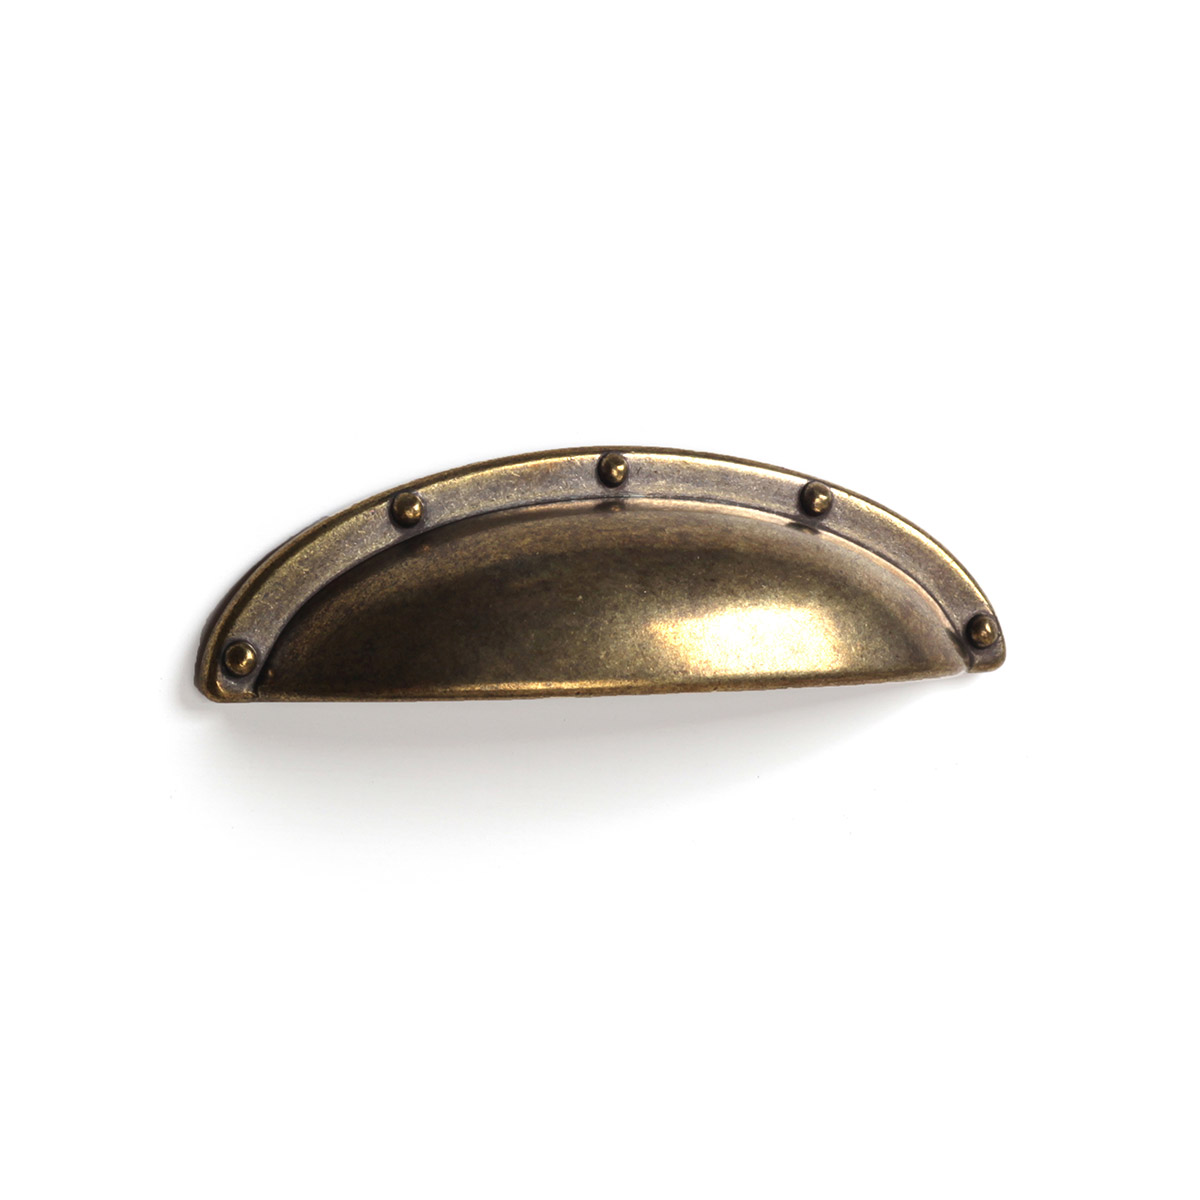 Poignée-shell en zamak avec finition en cuir, dimensions: 92x26x20mm, inserts: 64mm